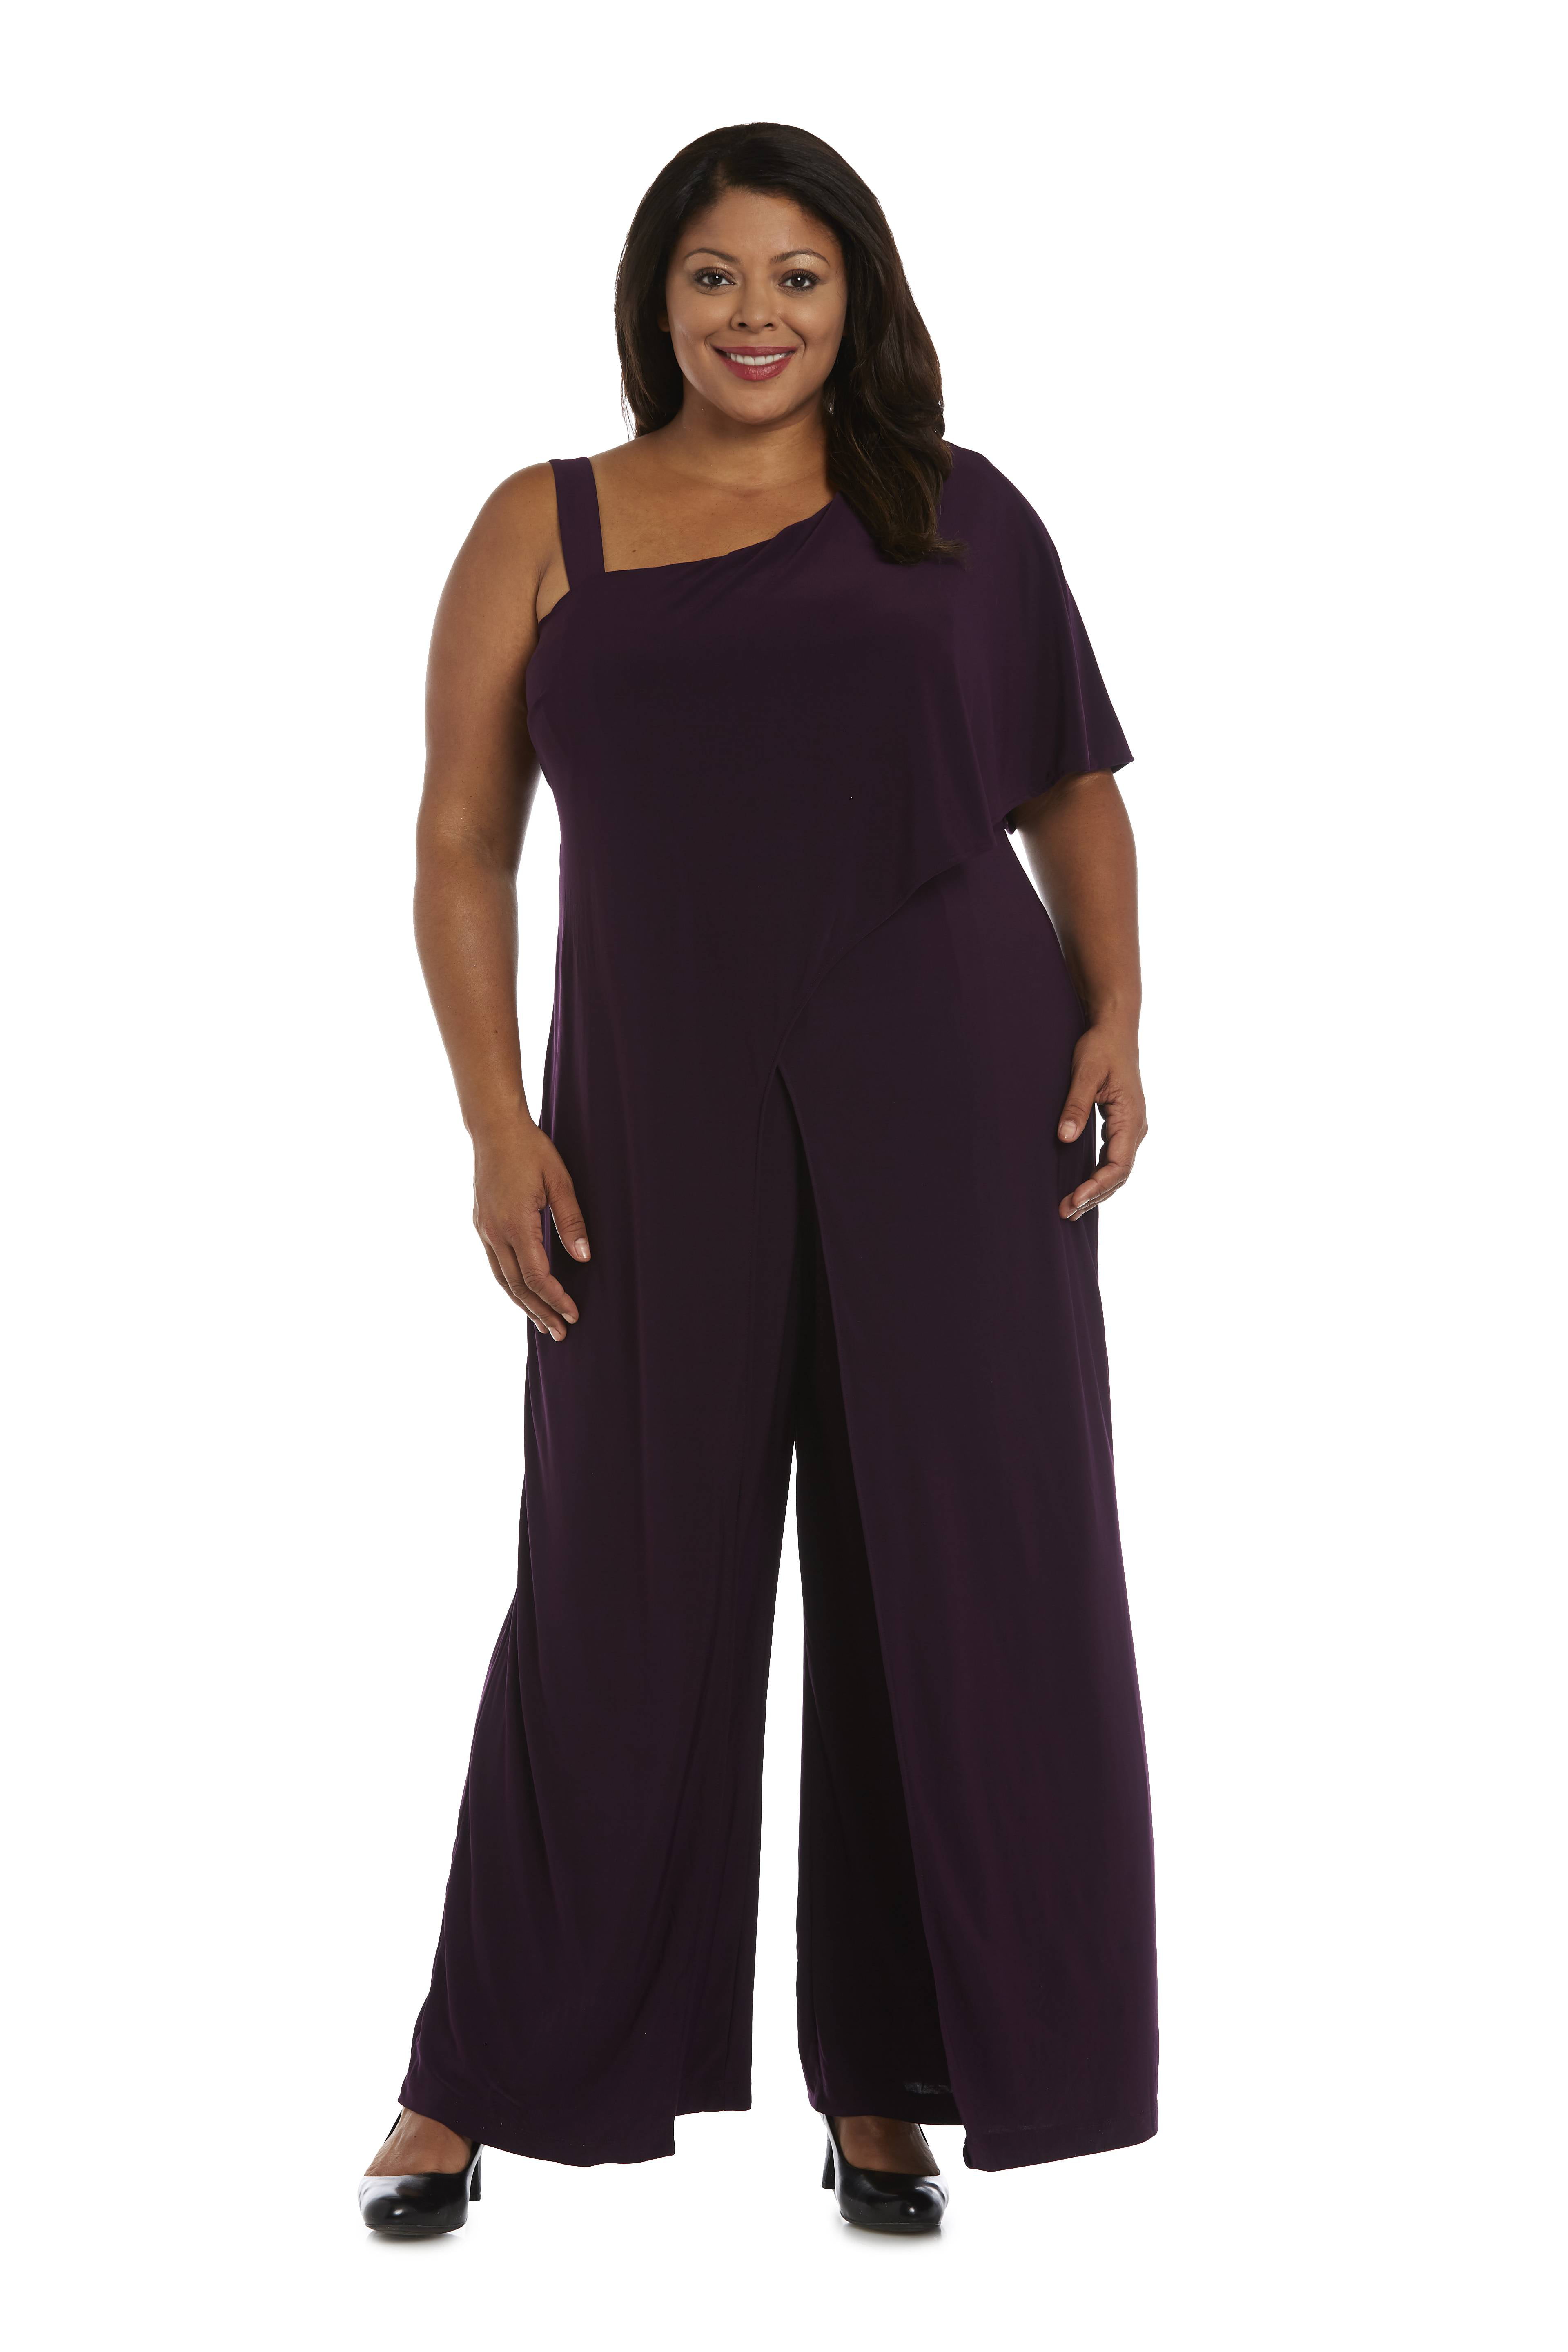 Women's Plus Size 1 Piece One Shoulder Jumpsuit with Straps - Walmart.com